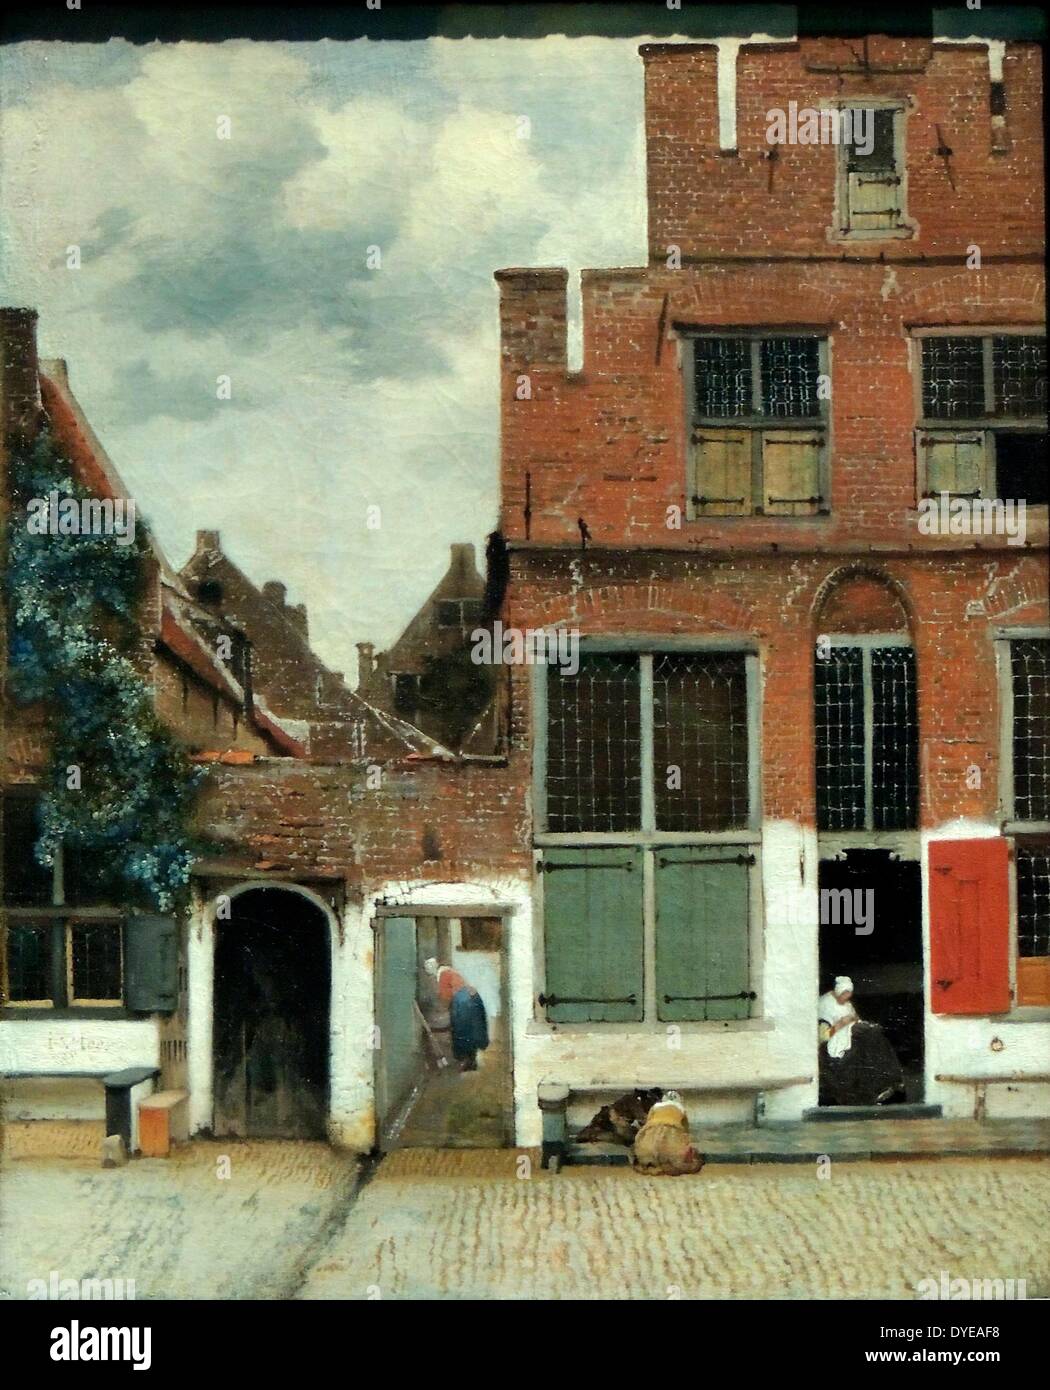 Blick auf die Häuser in Delft, wie "Die kleine Straße" von Johannes Vermeer (1632-1675), Öl auf Leinwand, c 1658 bekannt. Dieses Gemälde von einer ruhigen Straße mit ein paar Zahlen nimmt einen besonderen Platz in Vermeers Werk. Gerade Winkel geben der Komposition Gleichgewicht, während das Dreieck der Himmel eine Dynamik führt. Die alten Mauern, grobe Steine und weißen Verputz sind fast greifbar. Vermeer hat dennoch einige Freiheiten mit der Realität, wie die übergroßen grünen Fensterläden. Stockfoto